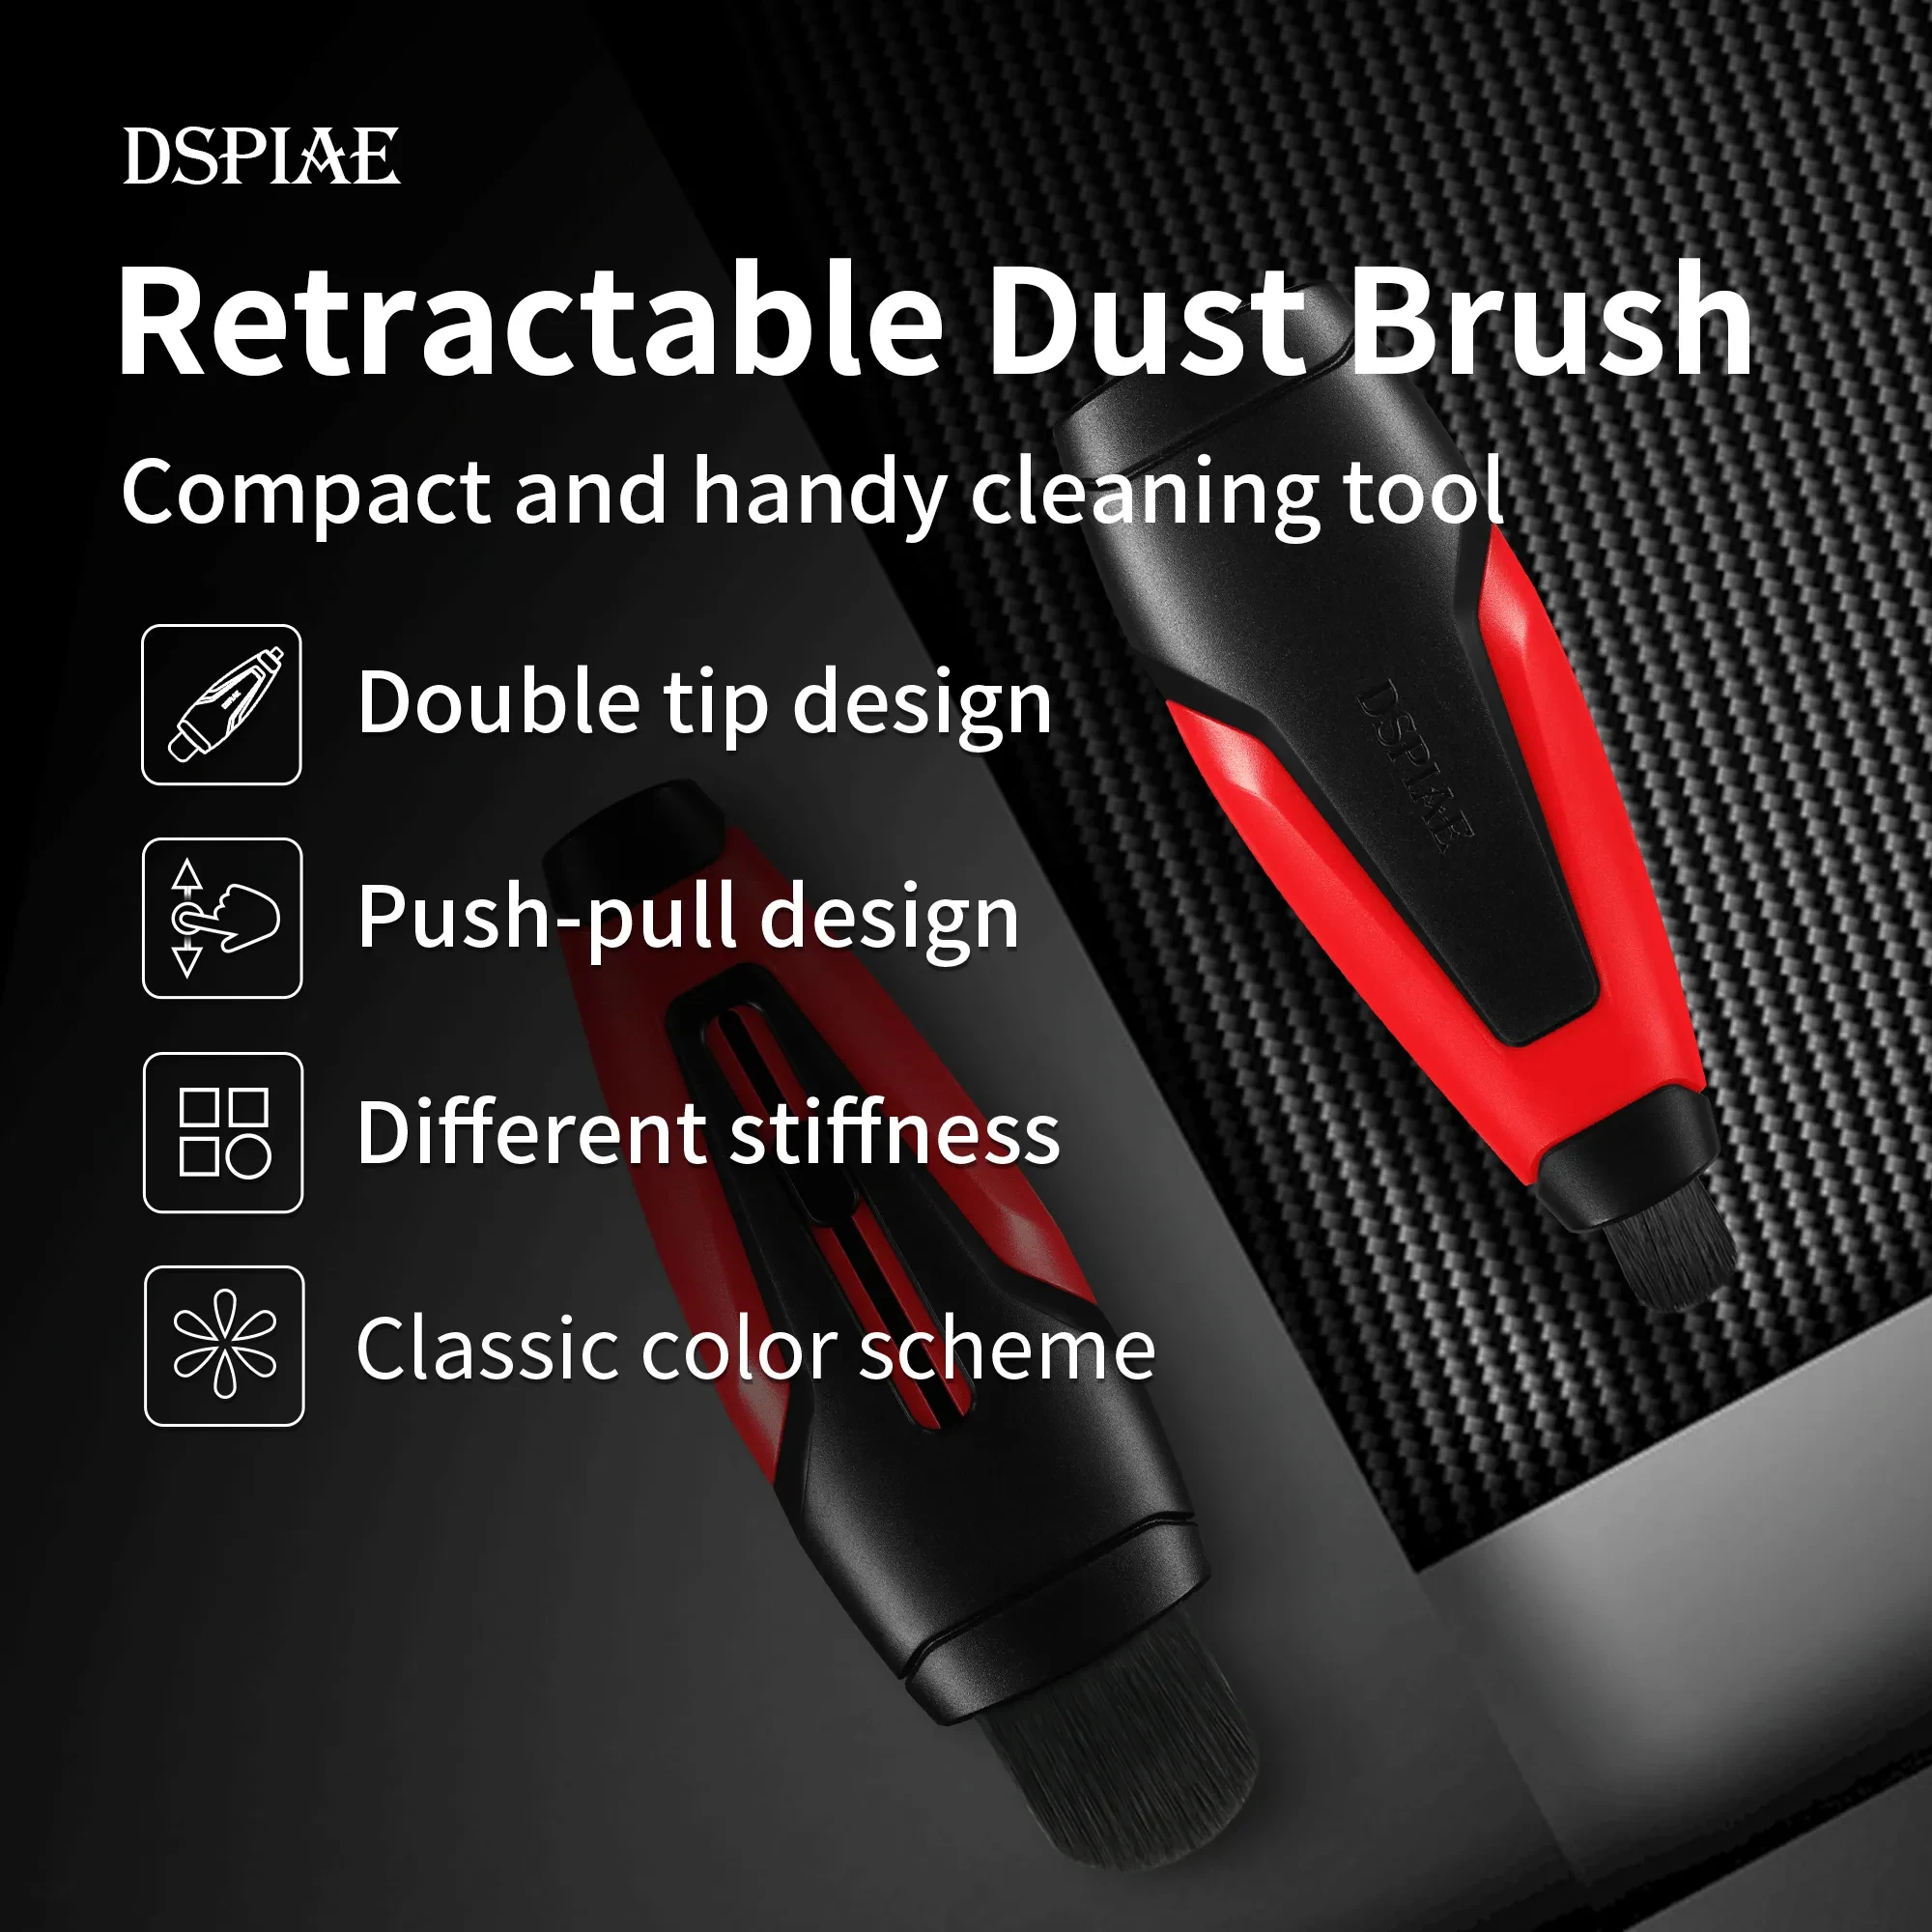 DSPIAE PT-RDB 개폐식 먼지 브러시 더블 헤드 디자인 푸시-풀 구조